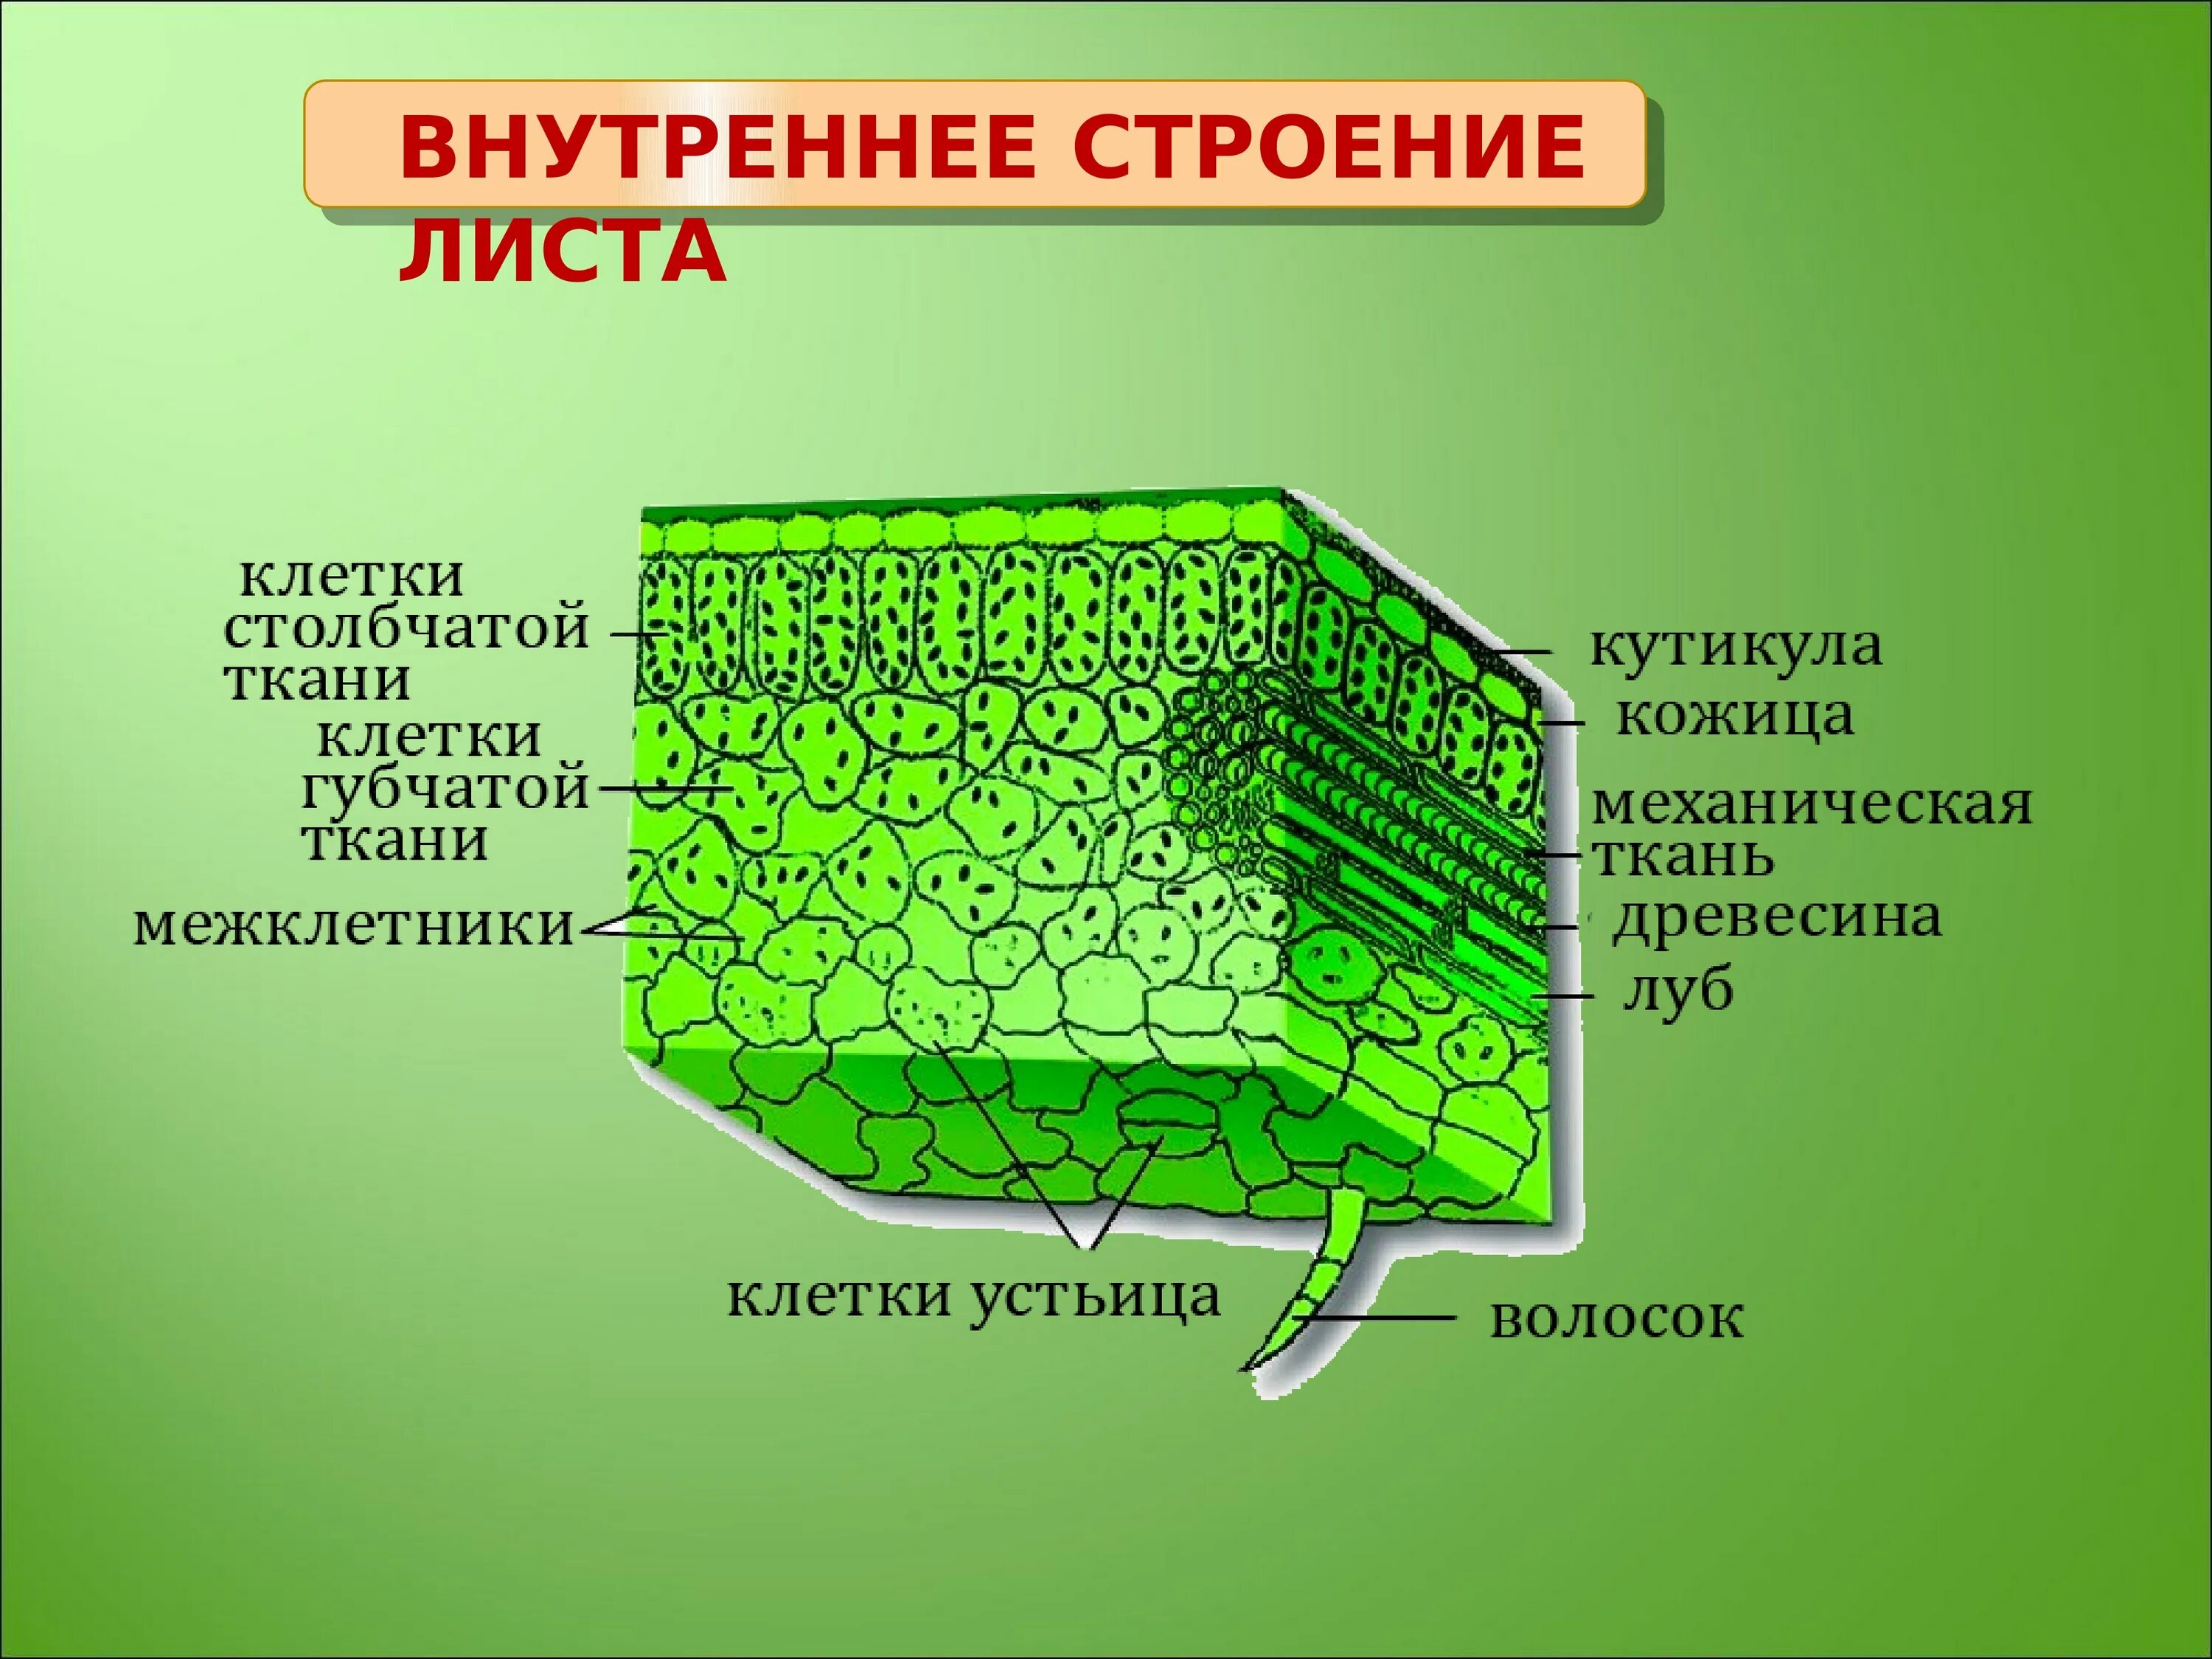 Какая ткань образует структуру листа. Внутреннее строение листа ткани. Внутреннее строение листа основная ткань. Внутреннее строение листа фотосинтезирующая ткань. Основная ткань структура листа.